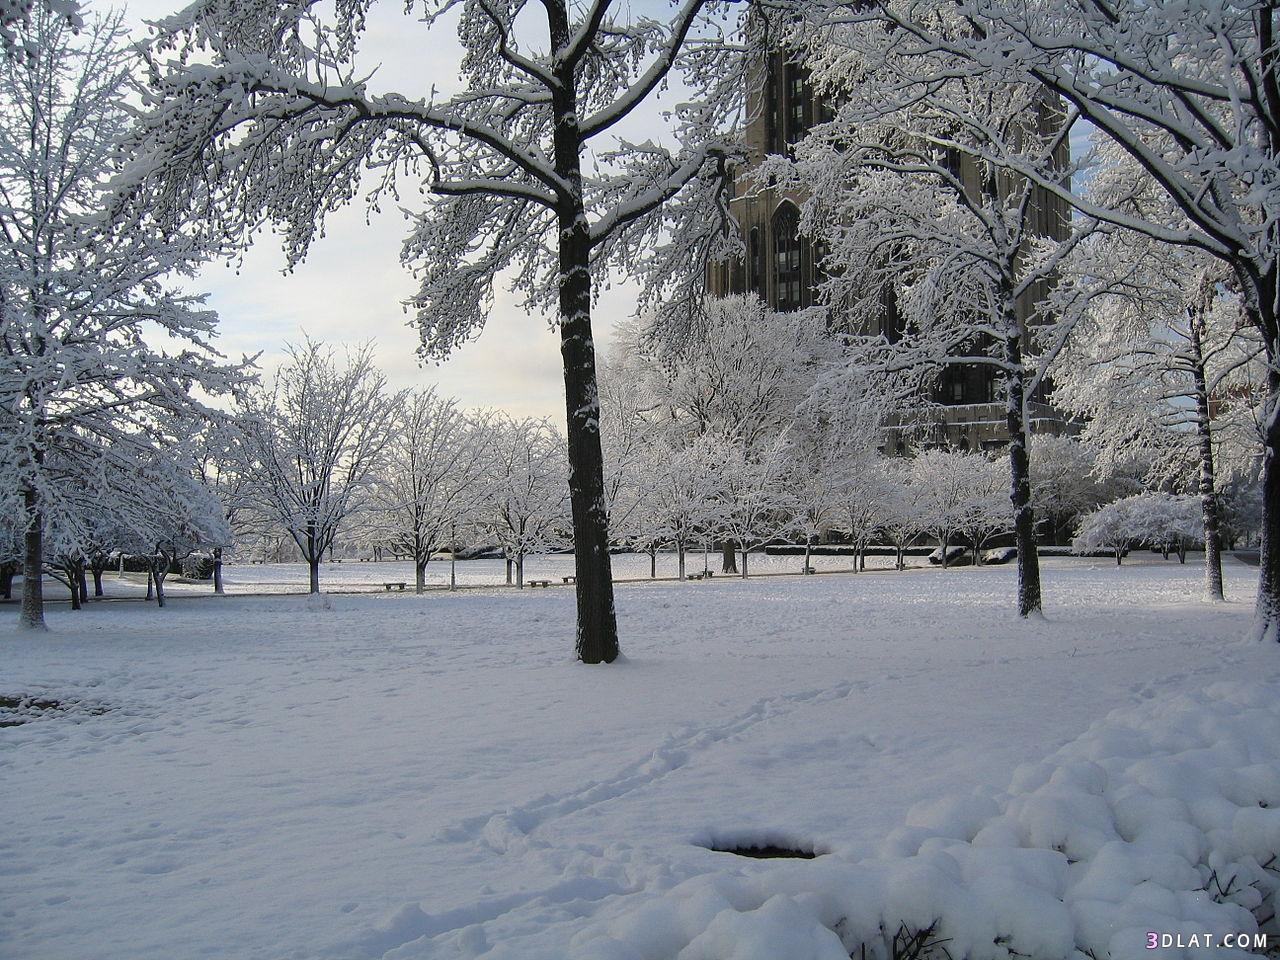 صور مُعبرة ورائعة عن أمطاروعواصف وثلوج الشتاء ،صورللطبيعة في فصل الشتاء 201